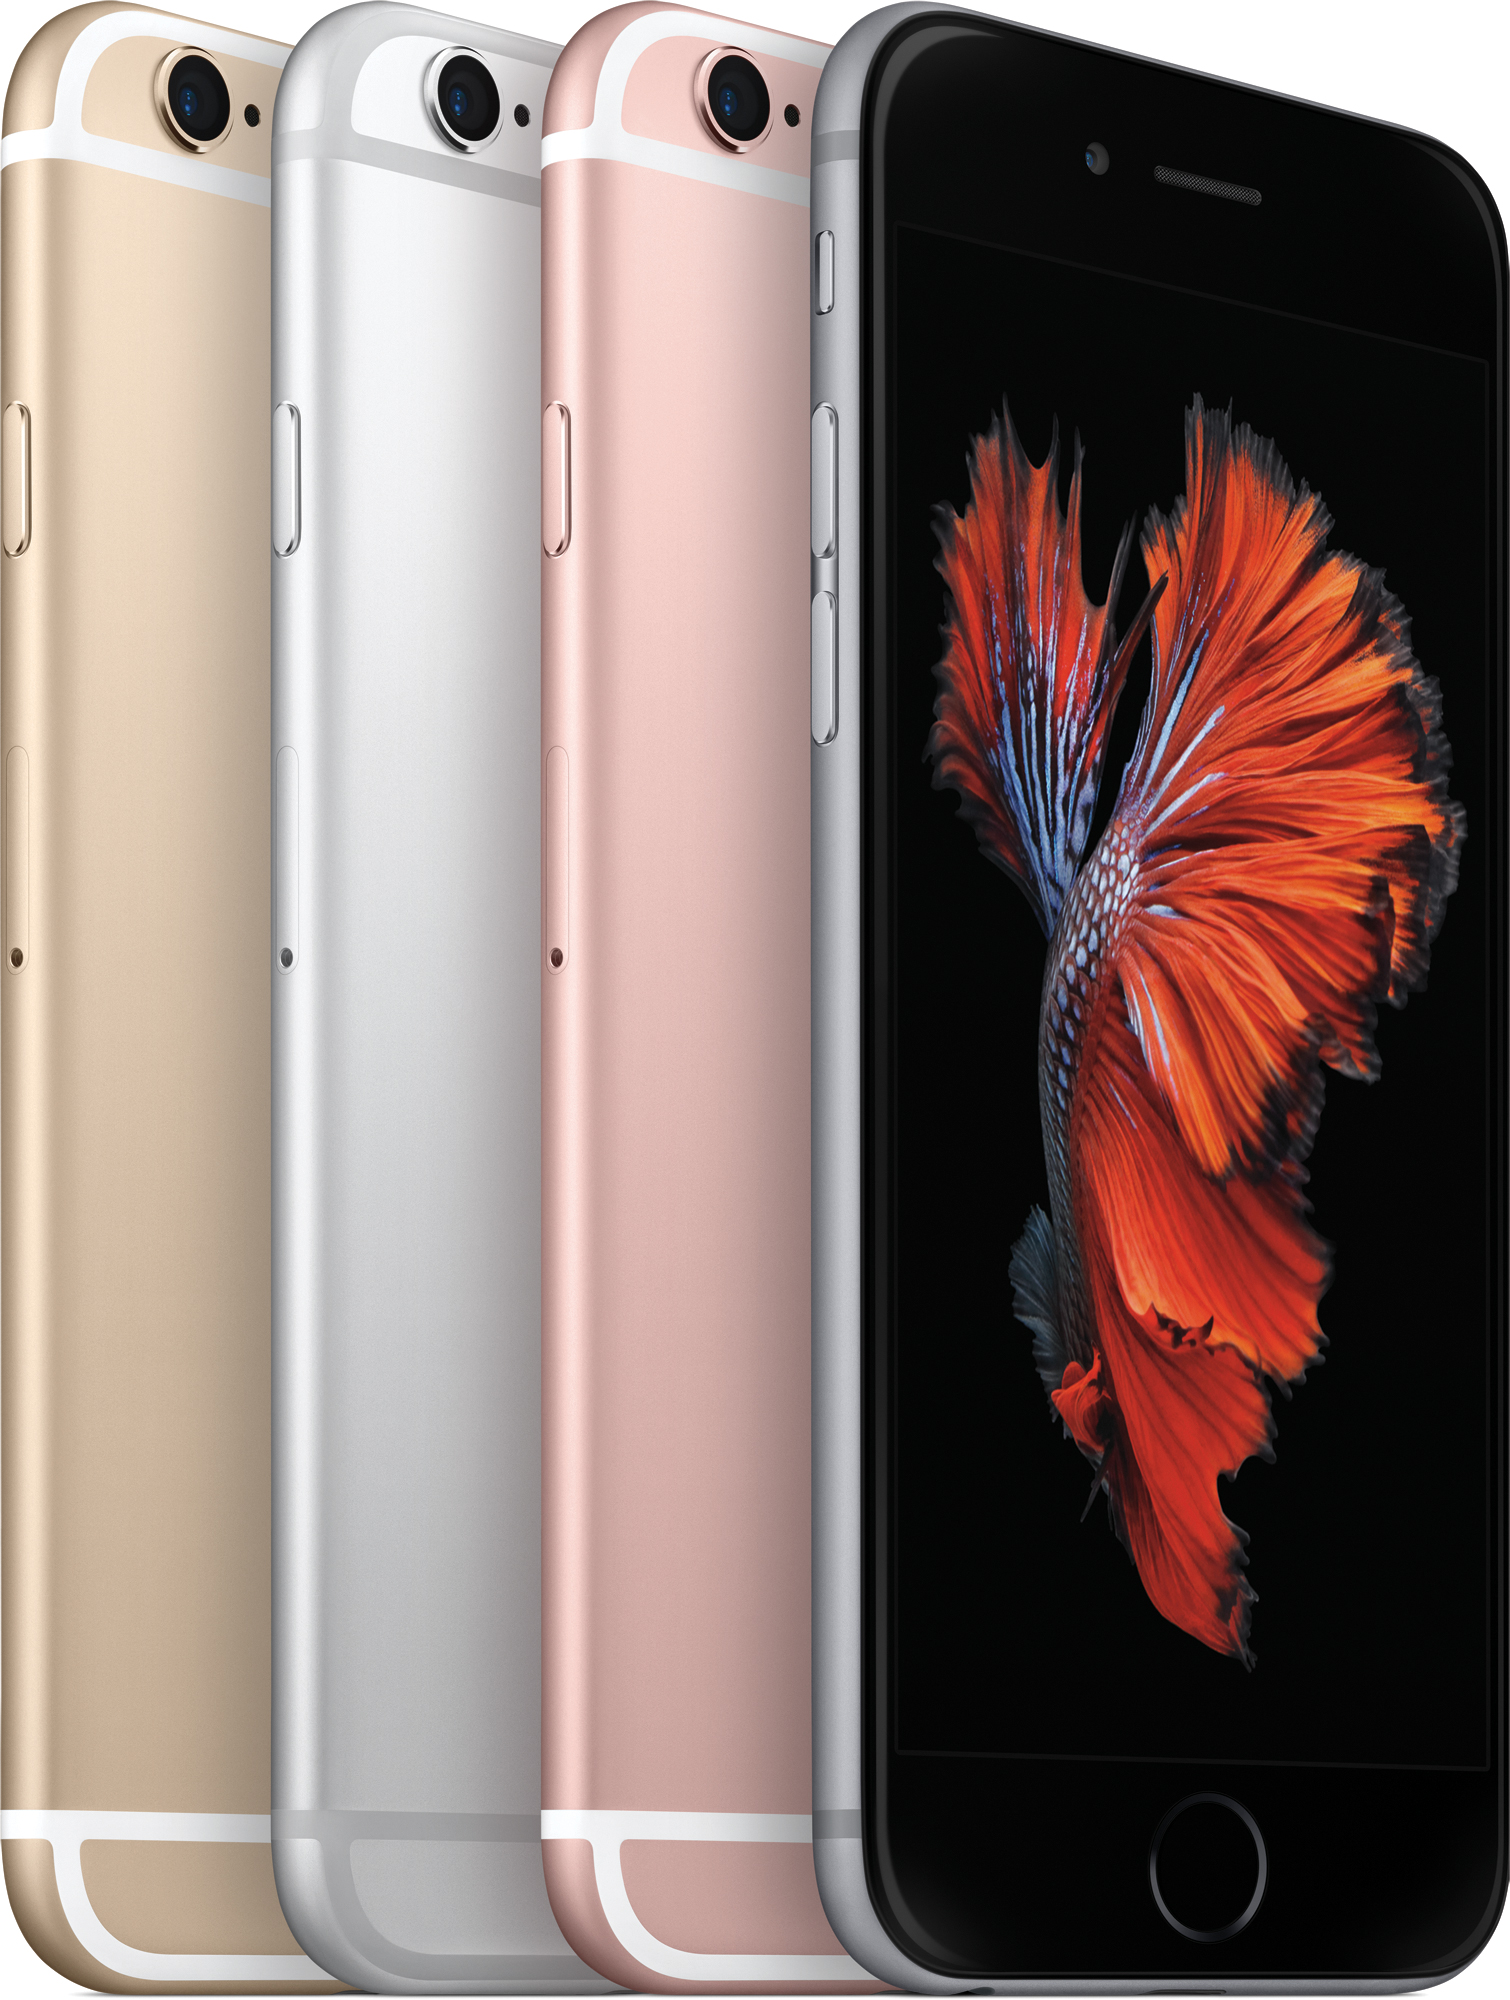 Família de iPhones 6s - dourado, prateado, ouro rosé e cinza espacial